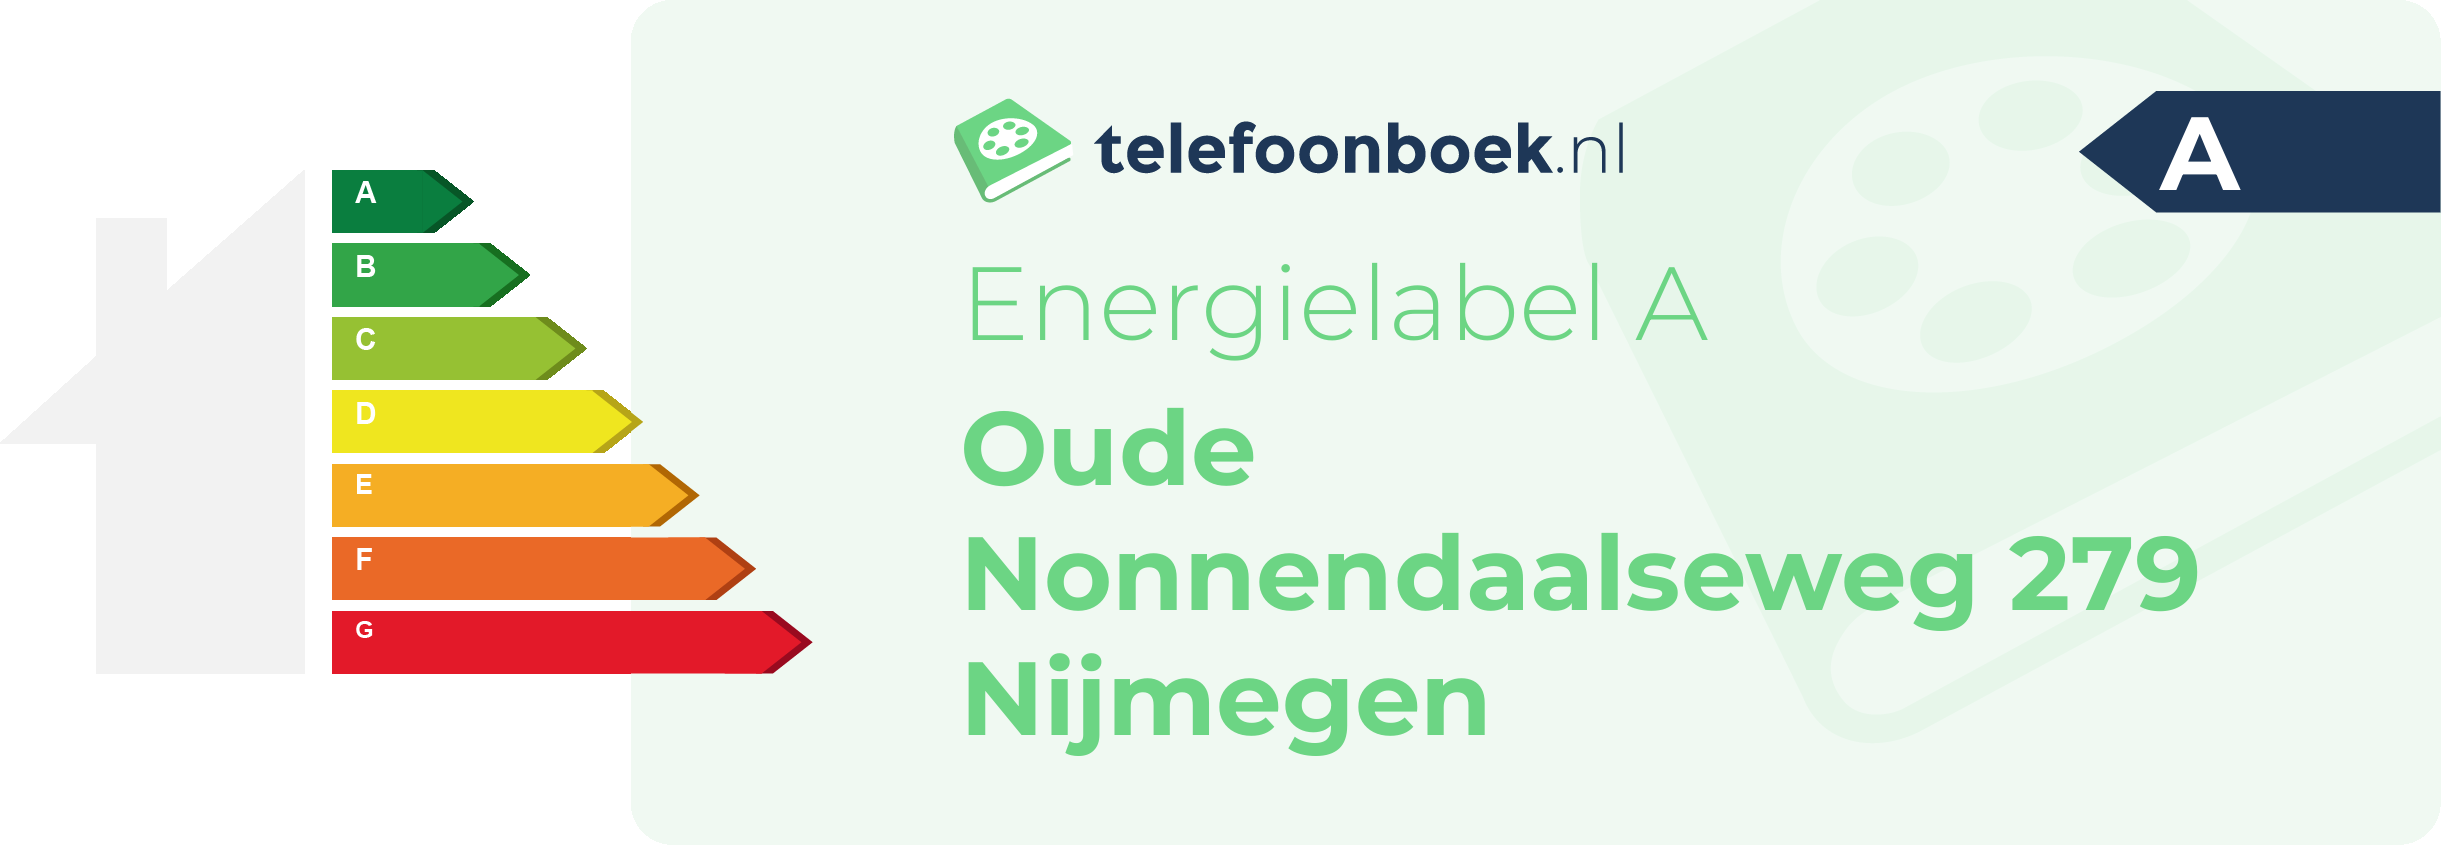 Energielabel Oude Nonnendaalseweg 279 Nijmegen